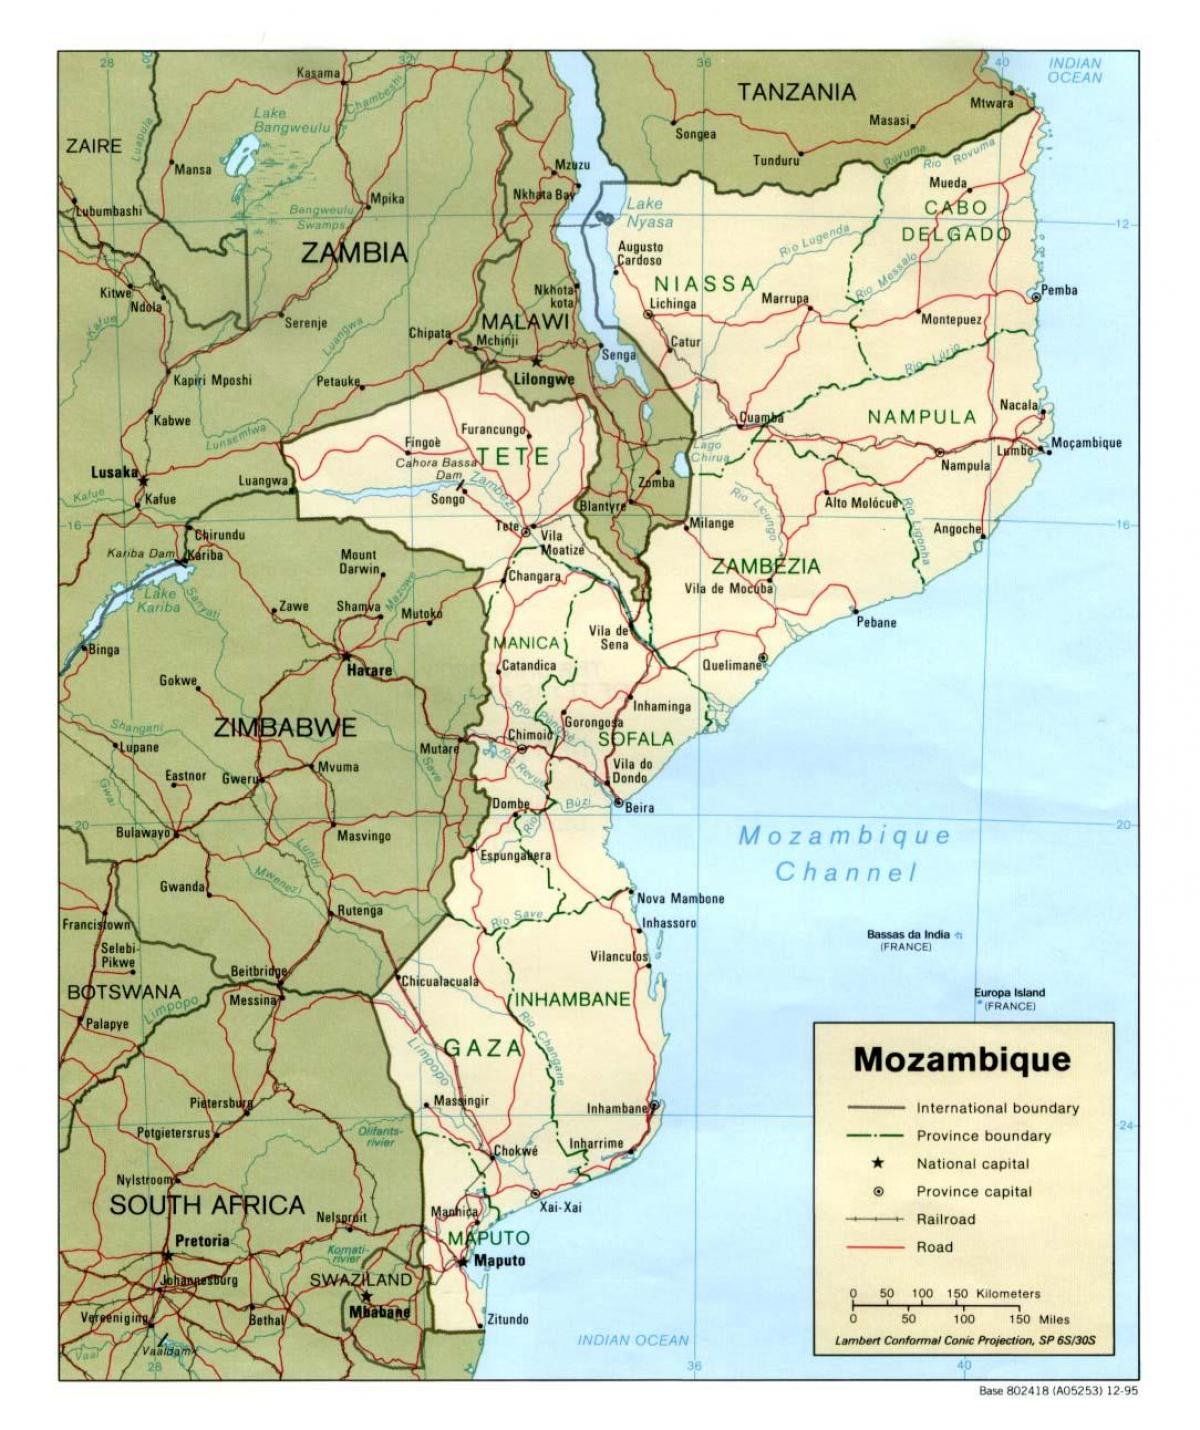 რუკა მოზამბიკის დეტალური რუკა